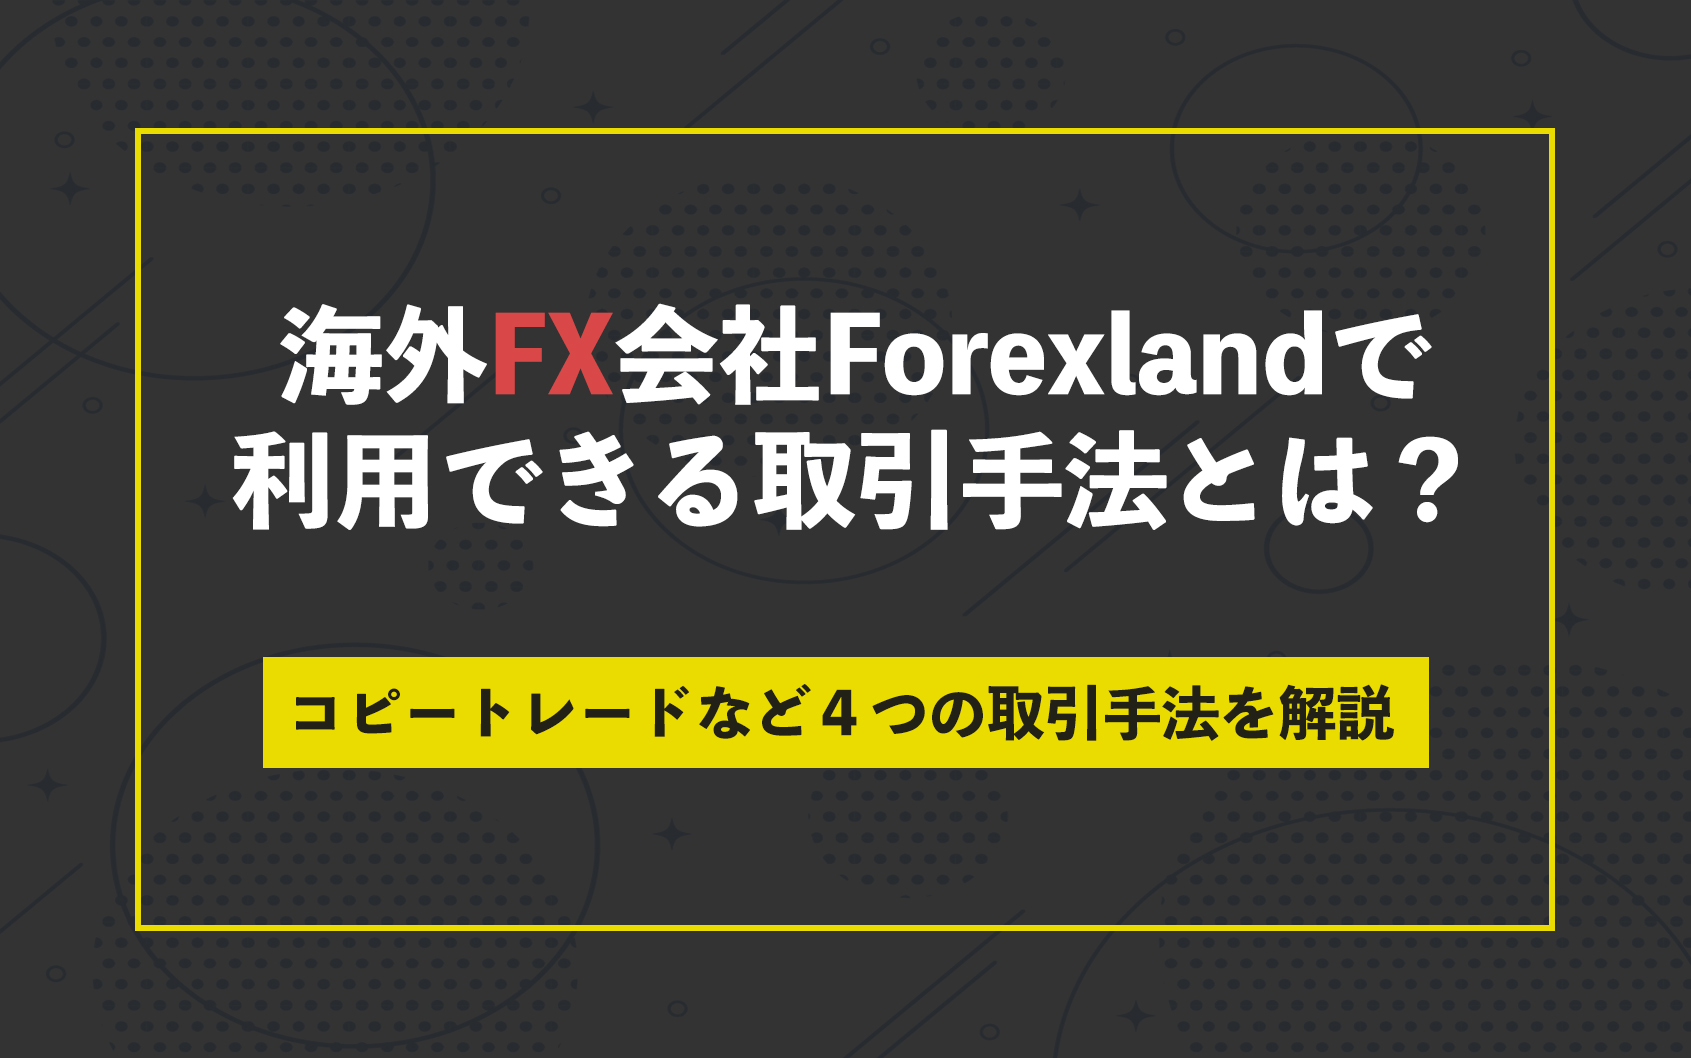 海外FX会社Forexland(フォレックスランド)で利用できる取引手法とは？コピートレードなど４つの取引手法を解説